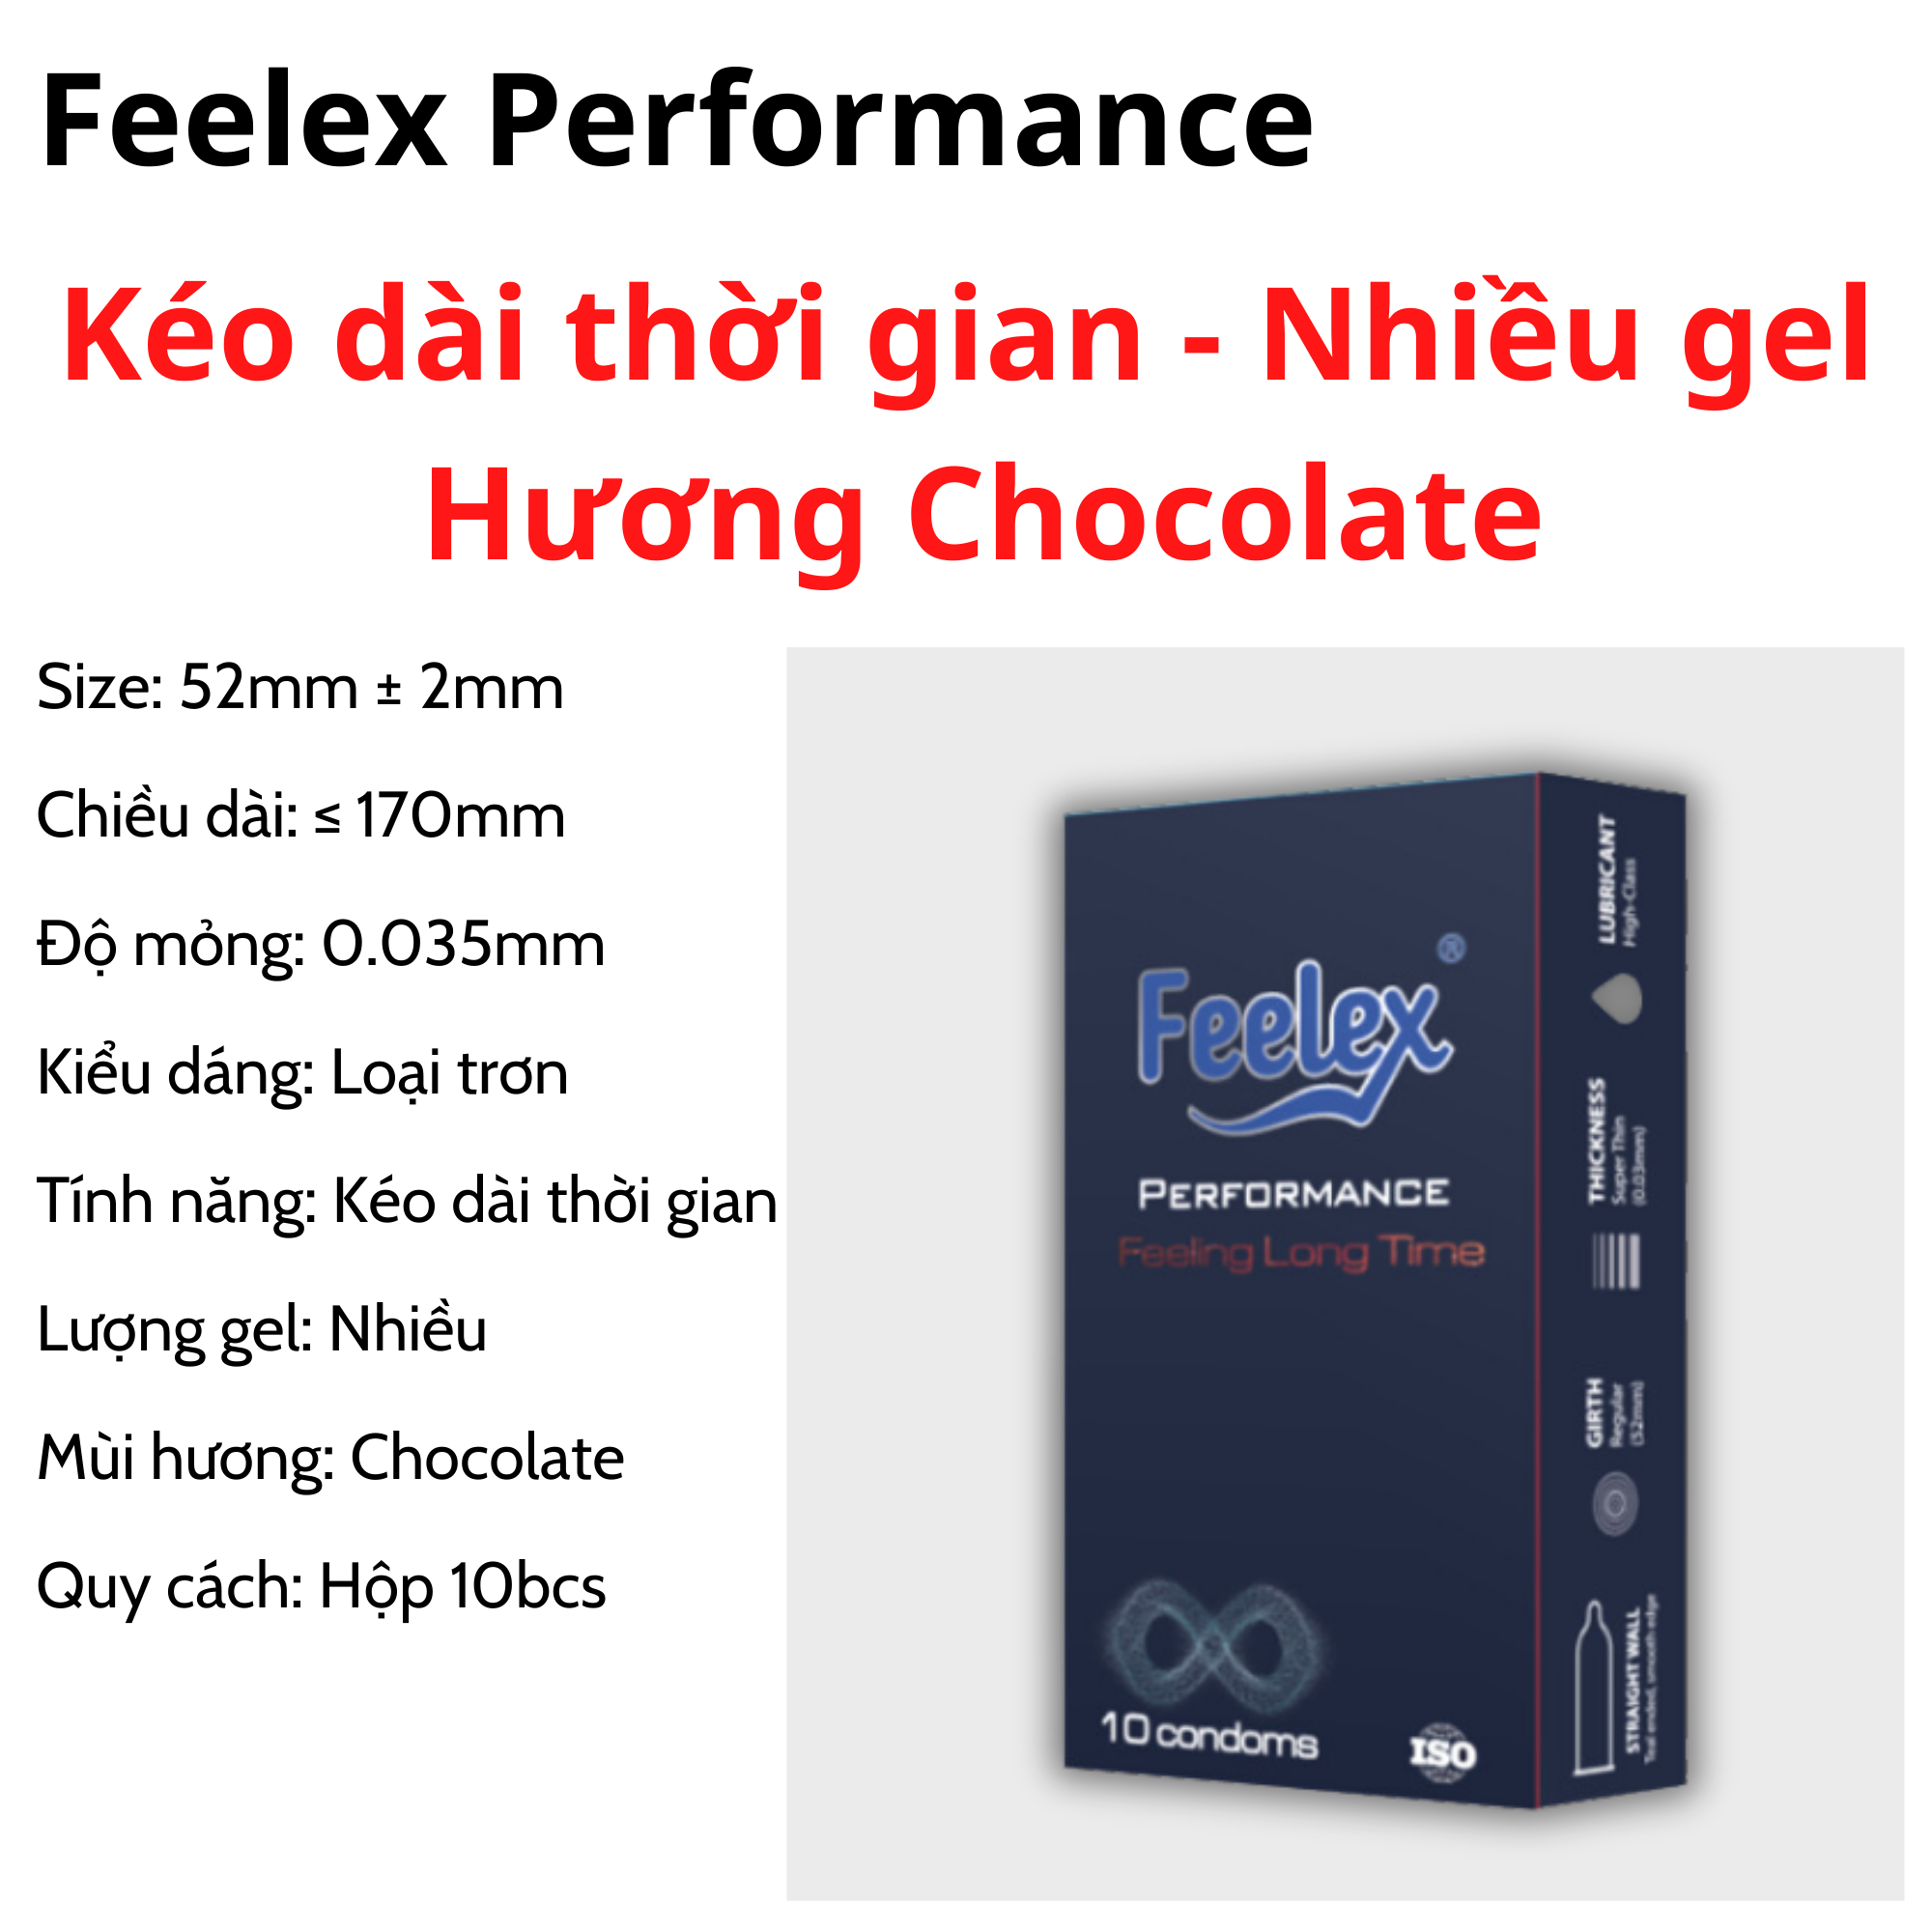 Bao cao su Feelex Performance kéo dài thời gian quan hệ, nhiều gel bôi trơn, hương socola - Hộp 10 chiếc